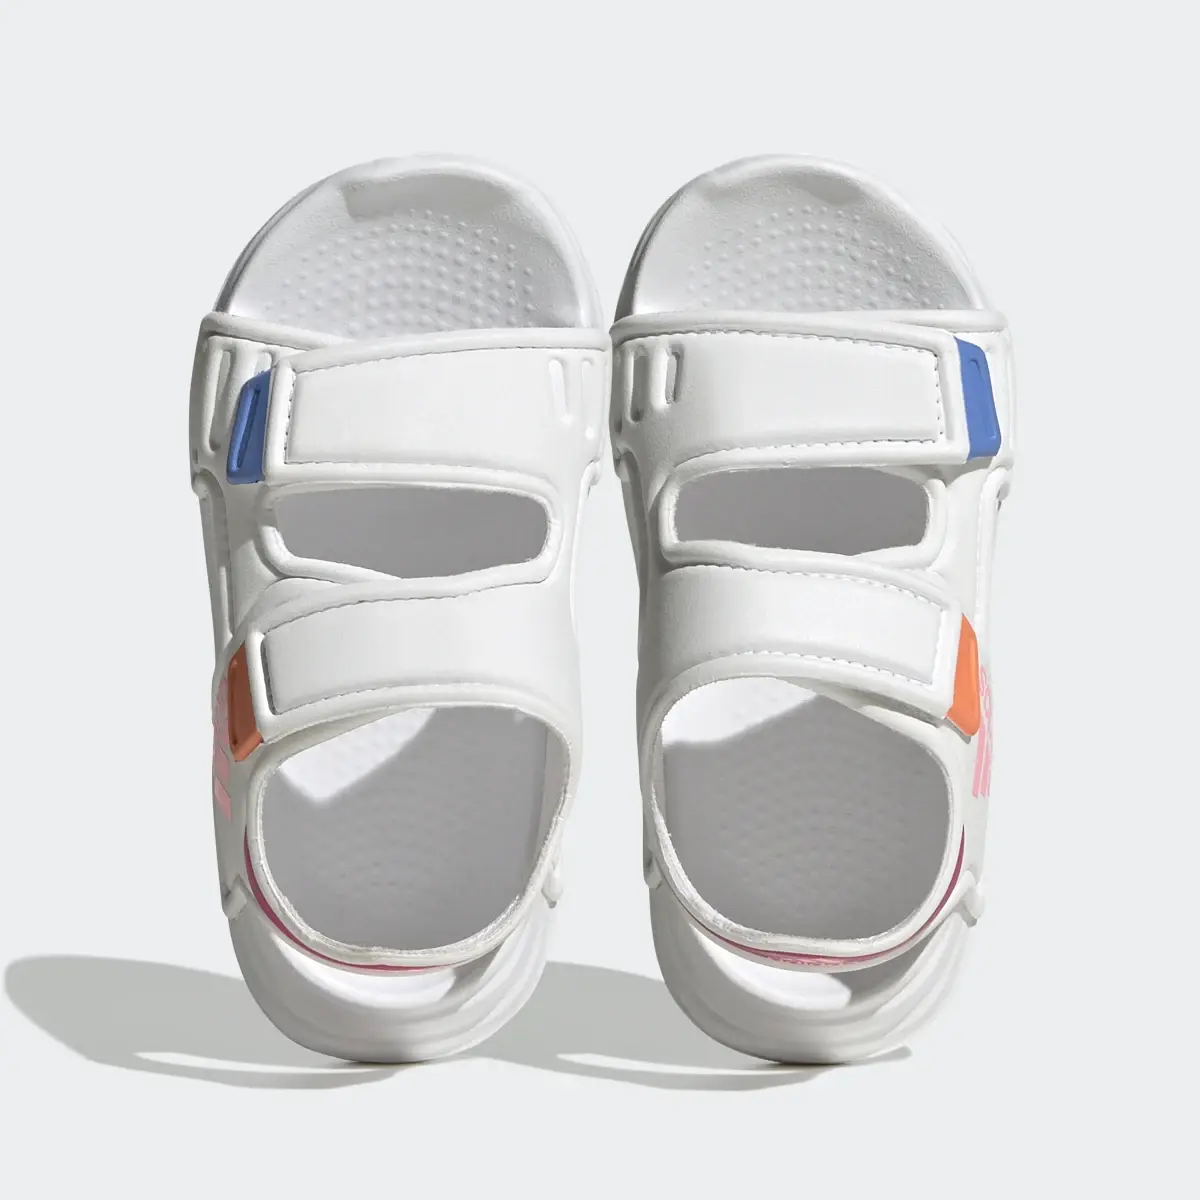 Adidas Altaswim Sandals. 3